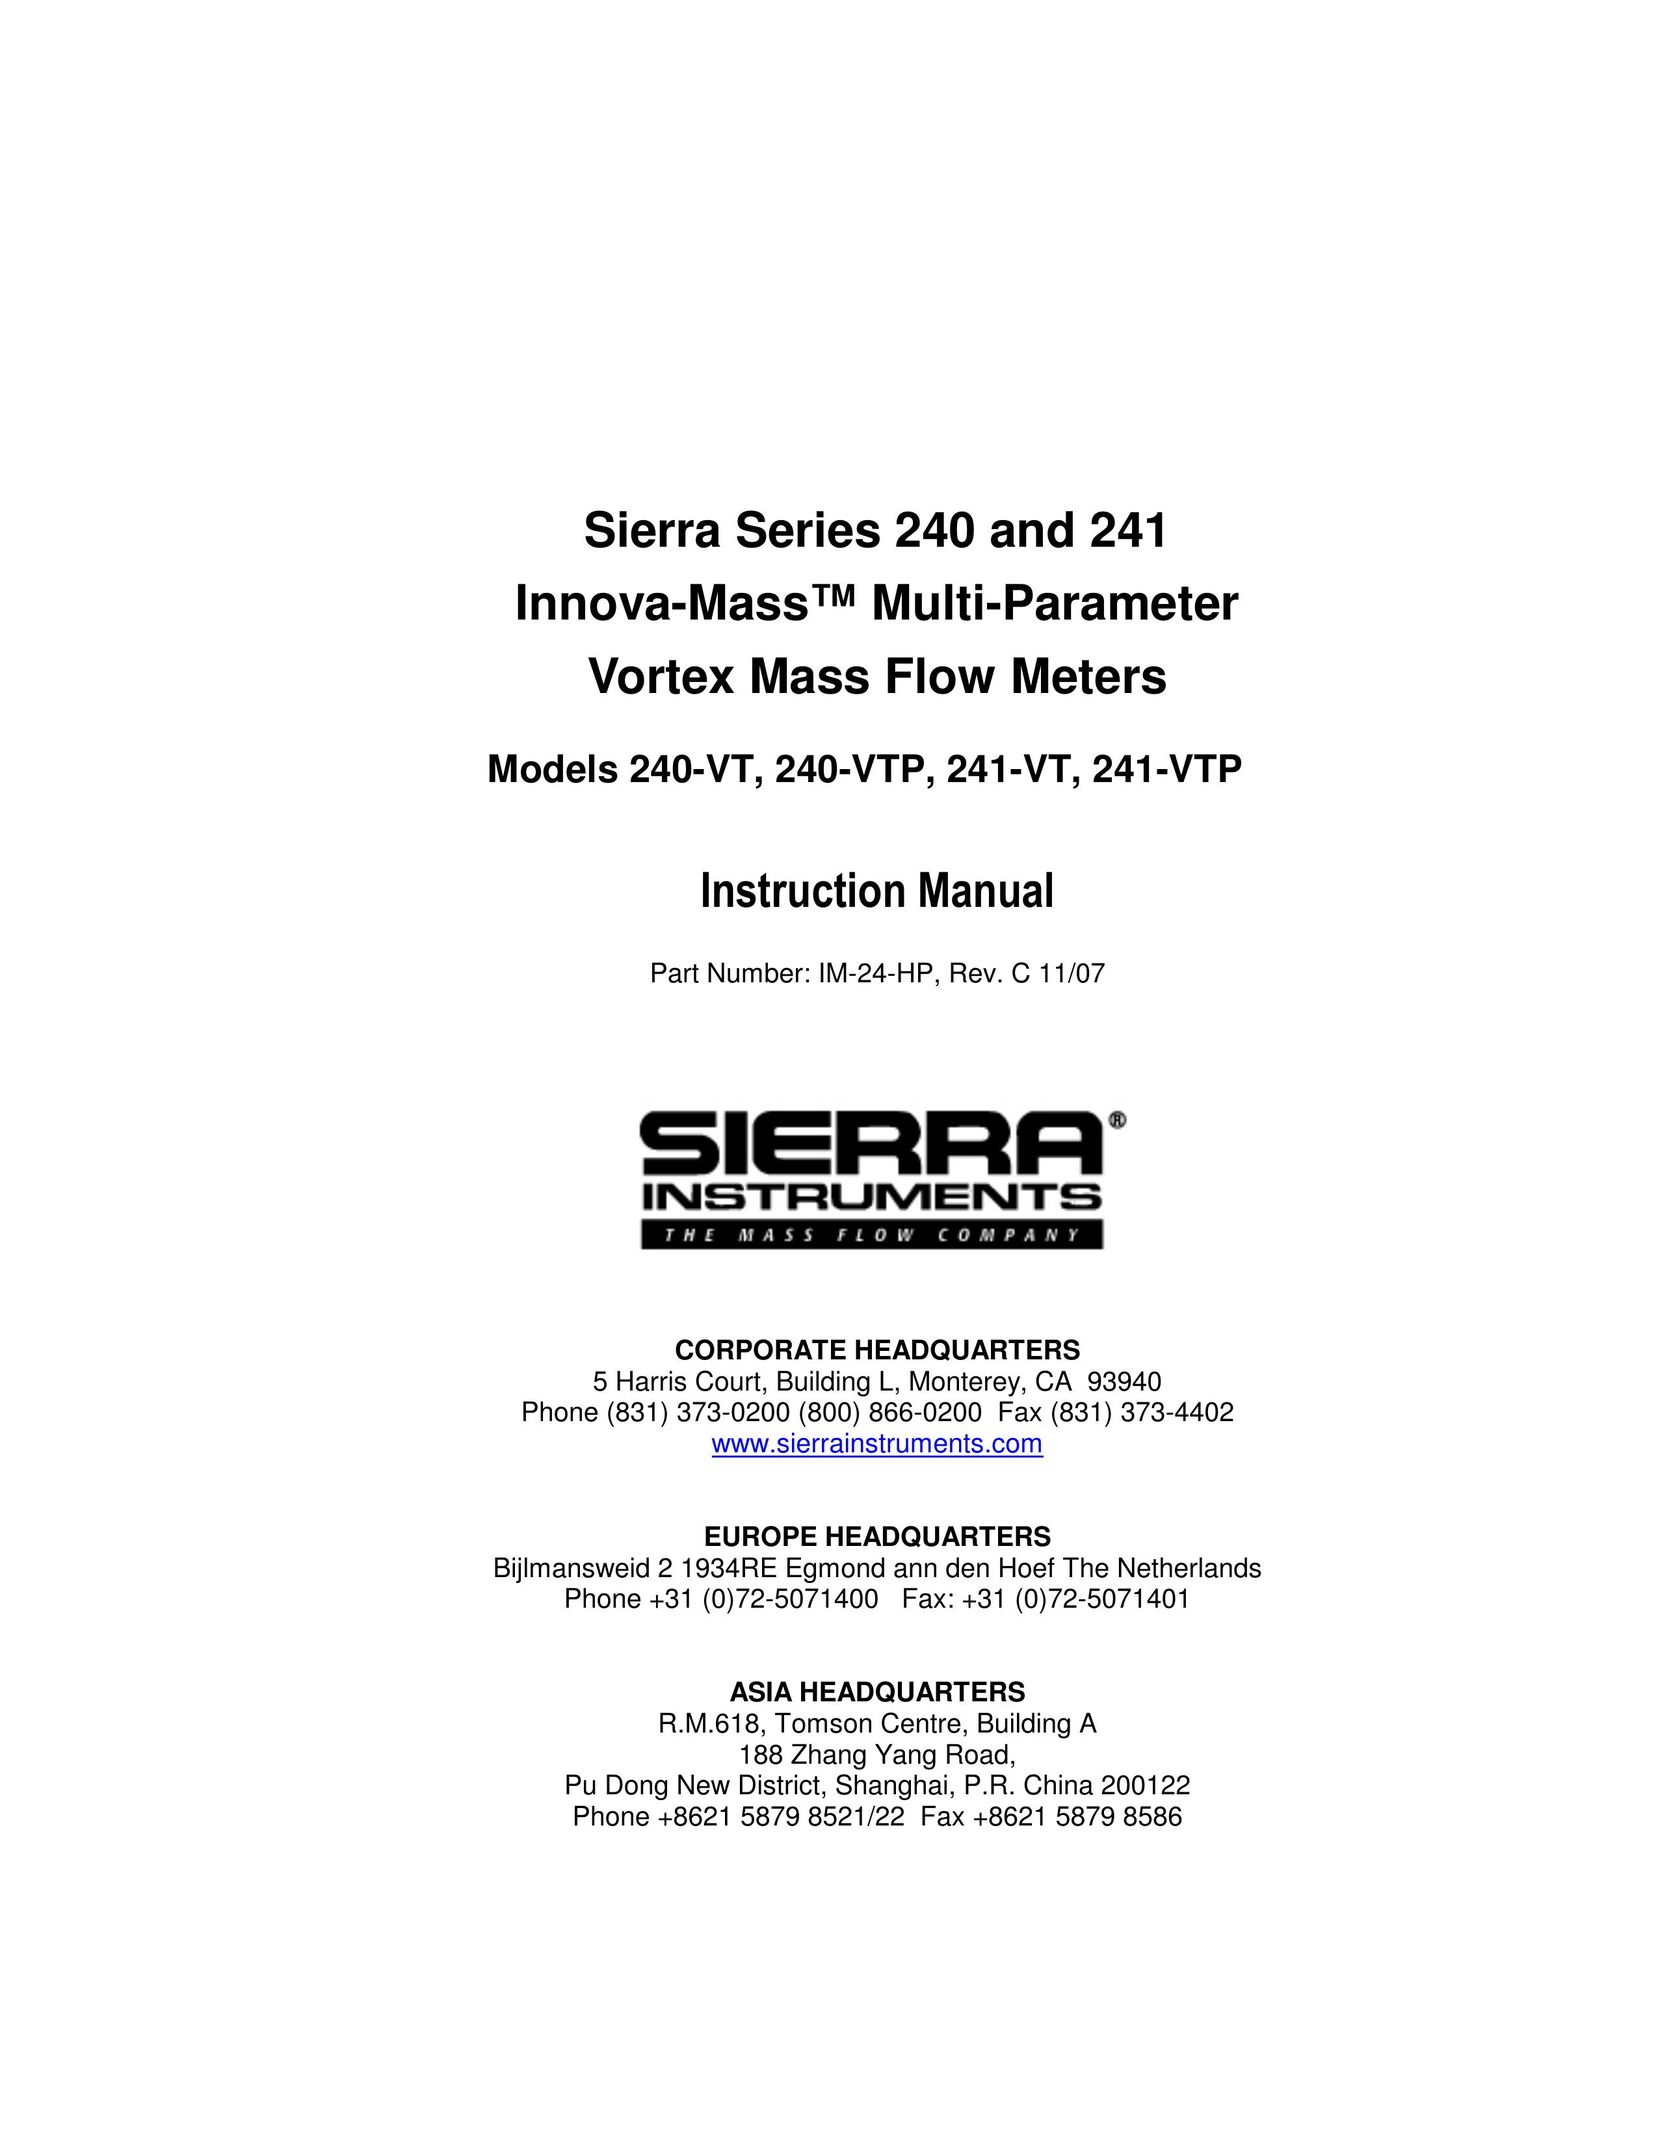 Sierra 241-VT Network Router User Manual